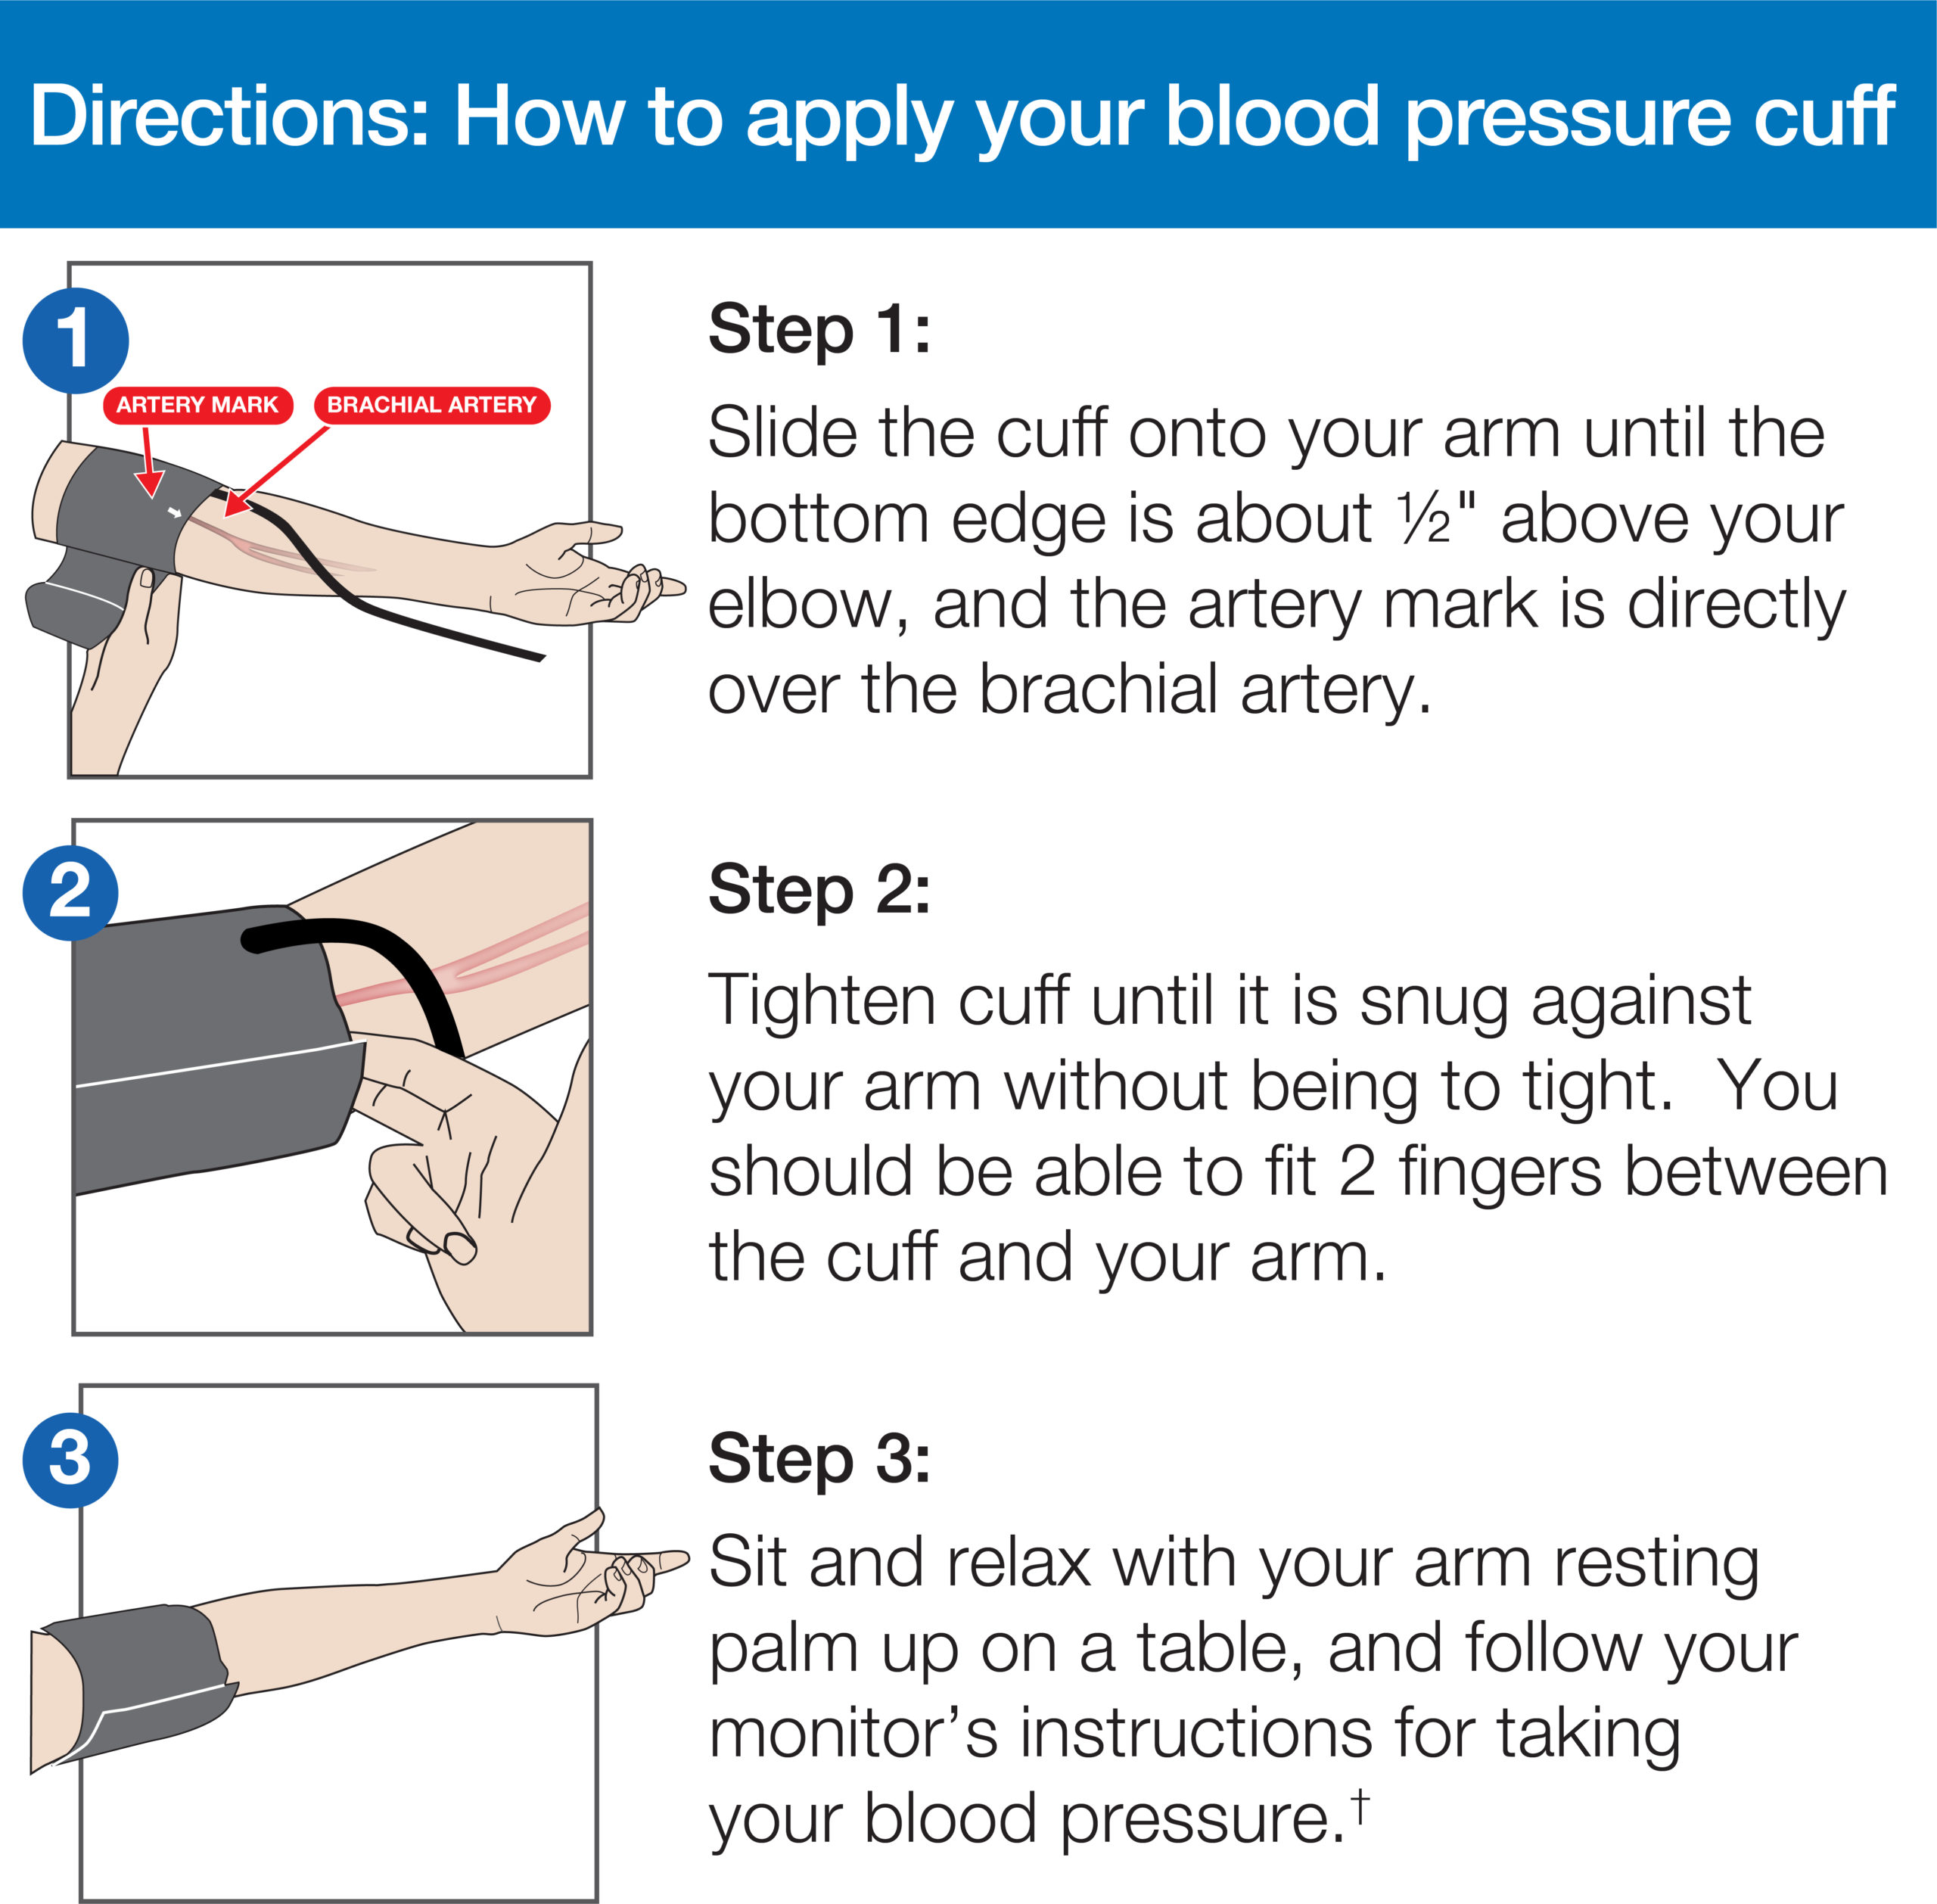  Arm Digital Blood Pressure Monitor with Medium Cuff